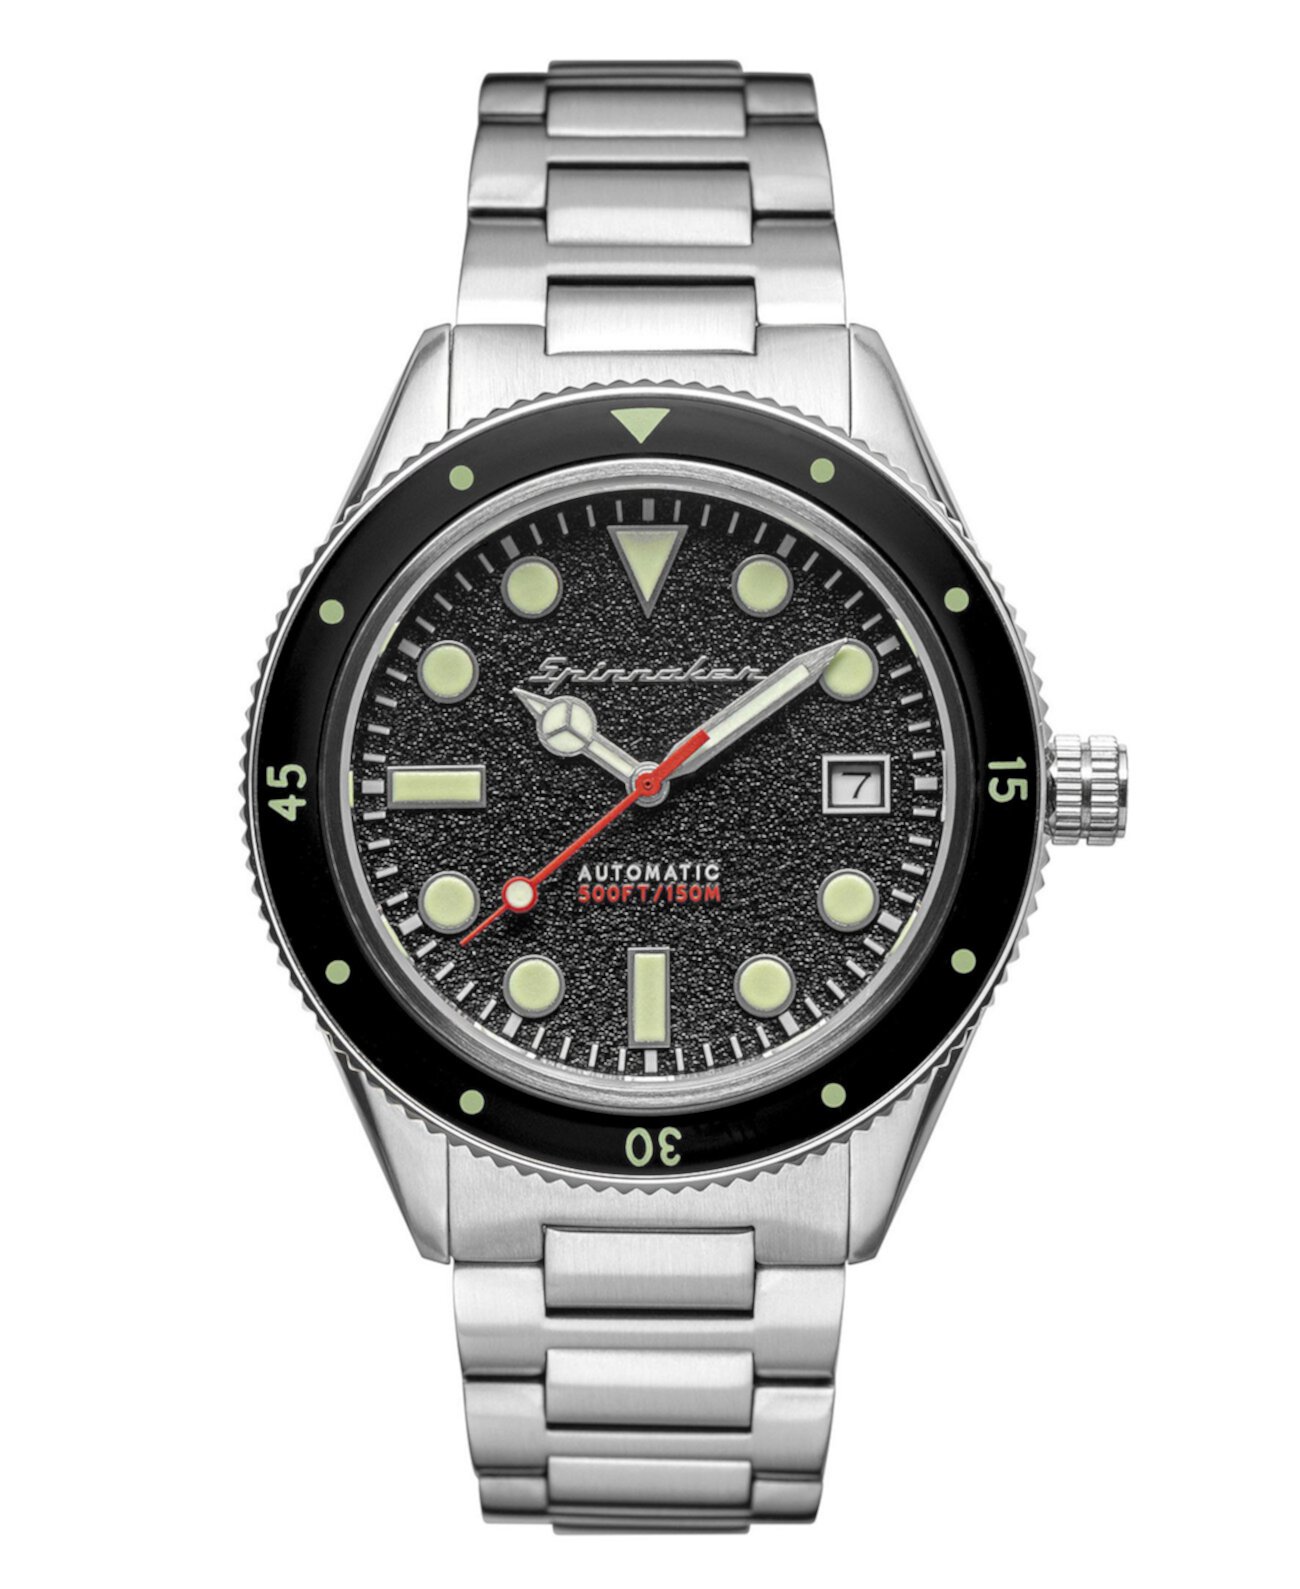 Мужские наручные часы Cahill среднего размера с автоподзаводом серебристого цвета из нержавеющей стали с браслетом 40 мм Spinnaker